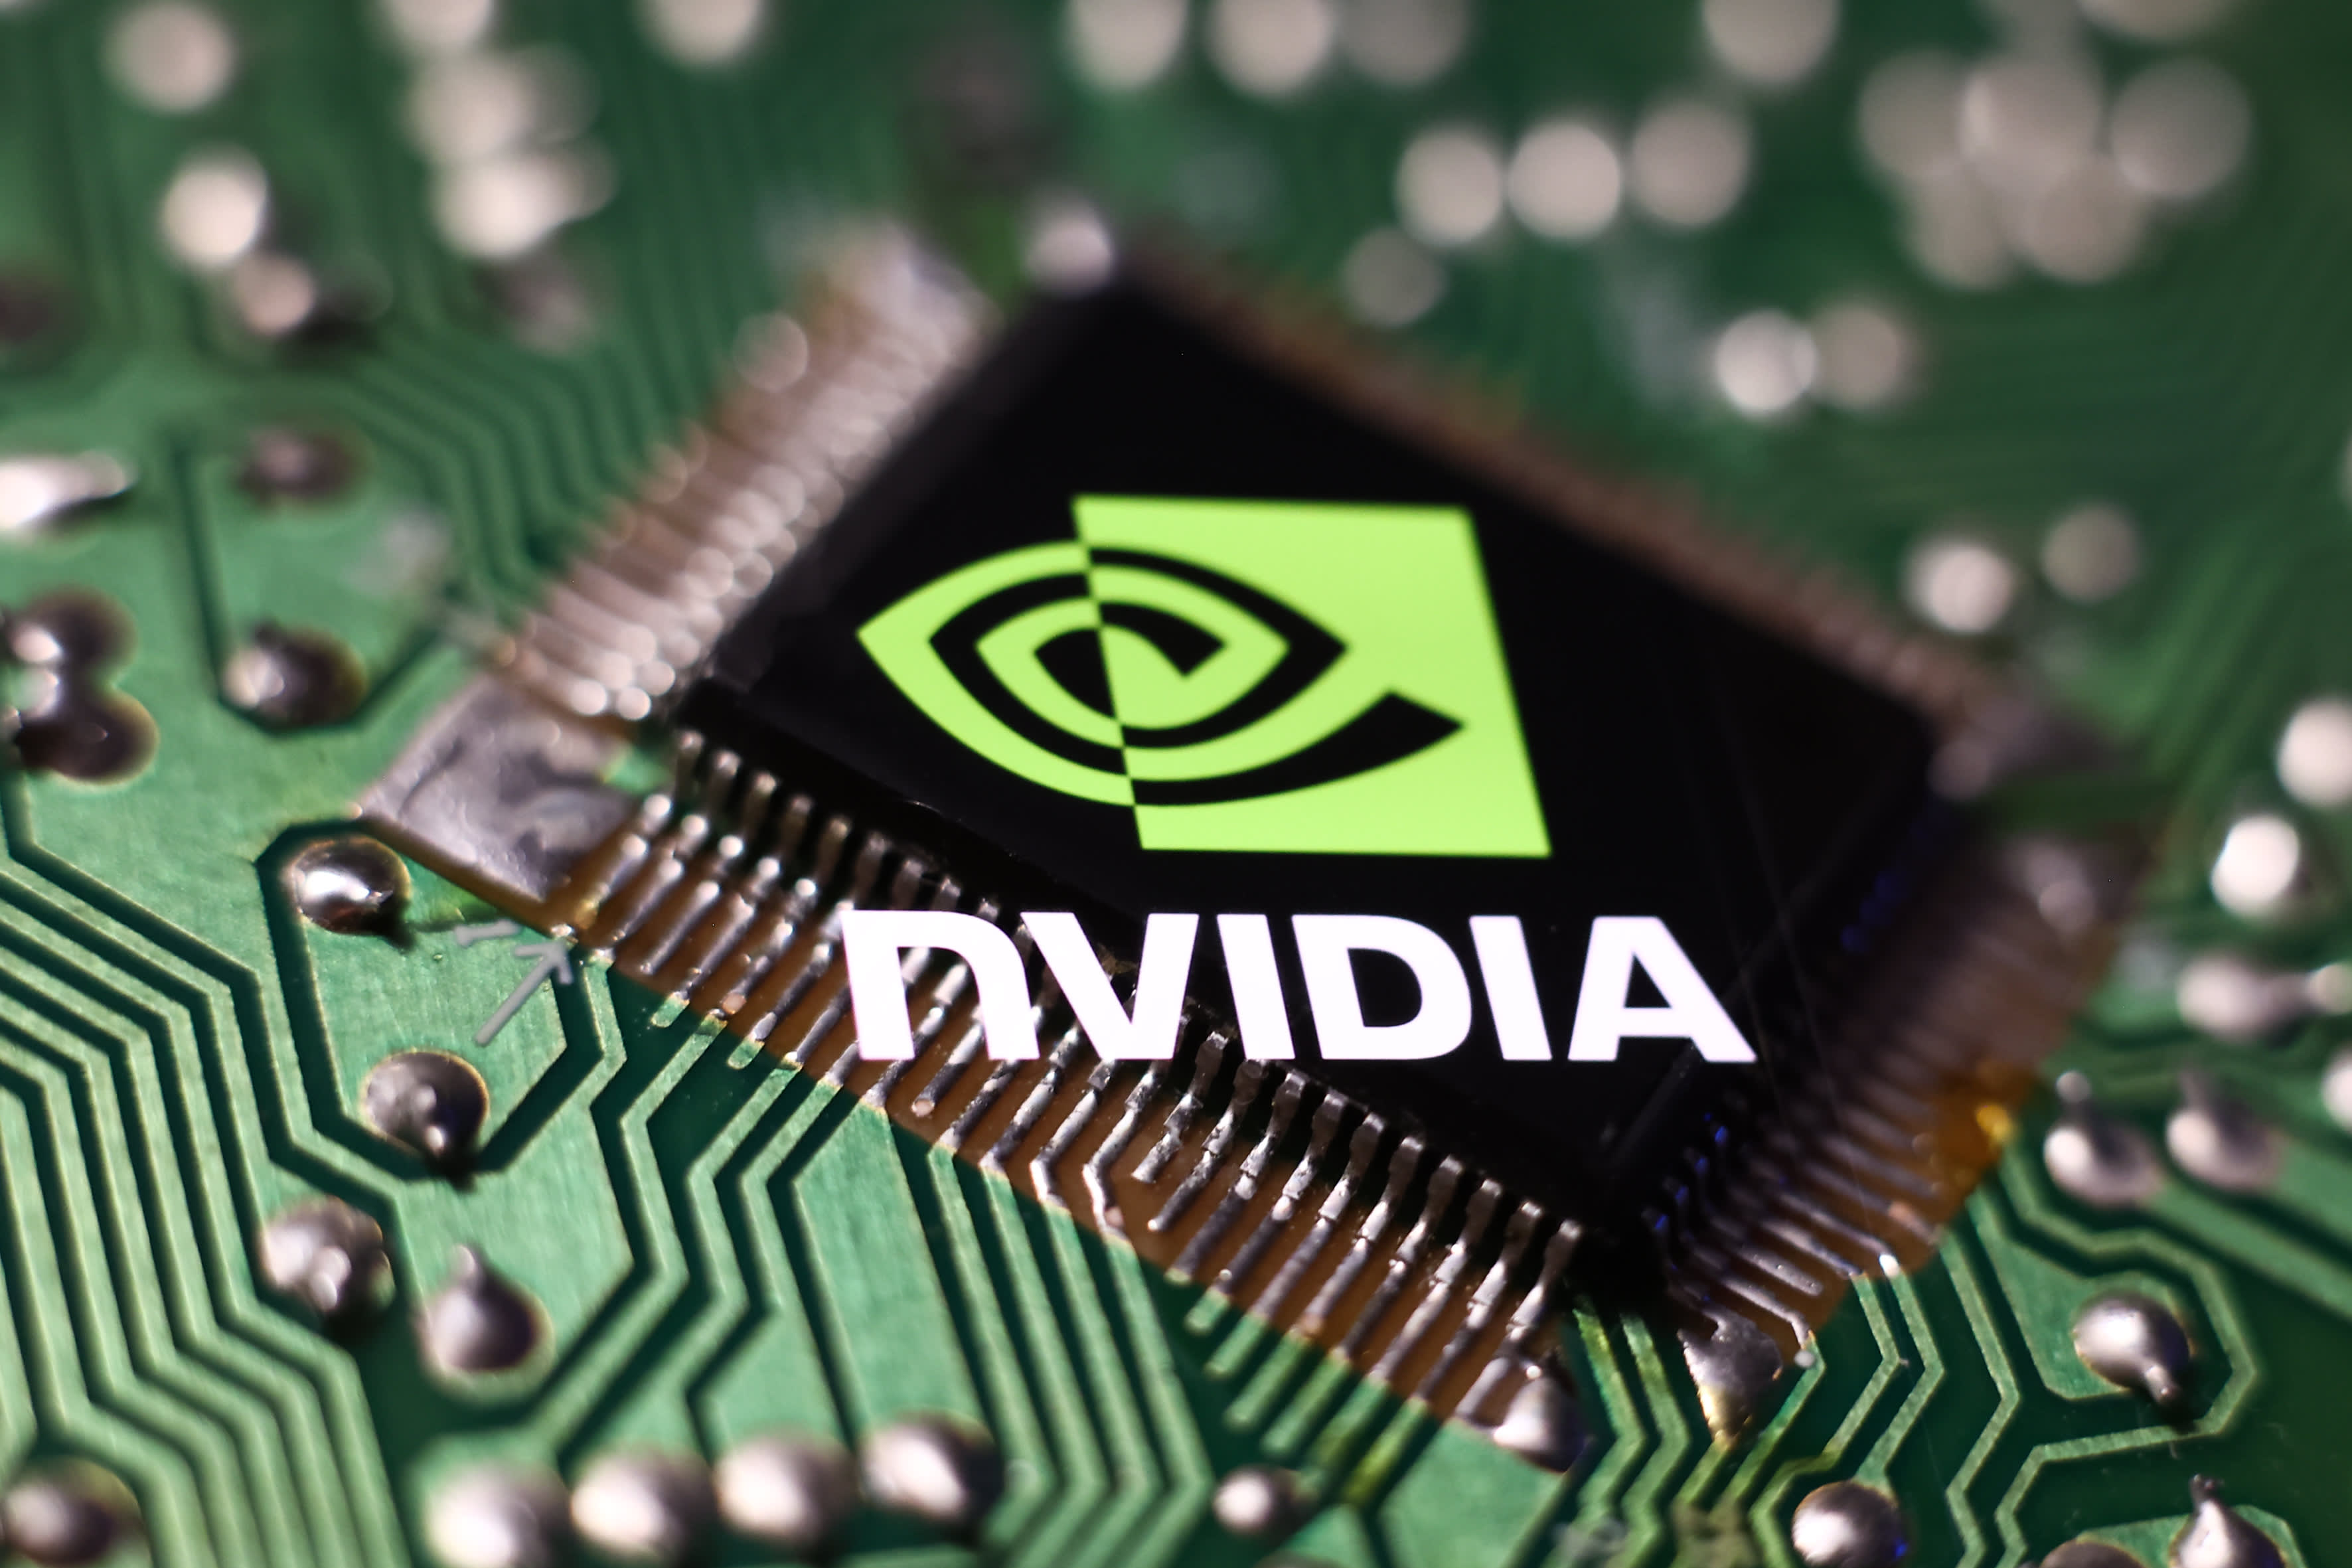 Aandelen op het gebied van kunstmatige intelligentie en halfgeleiders stegen nadat de winstcijfers van Nvidia daalden